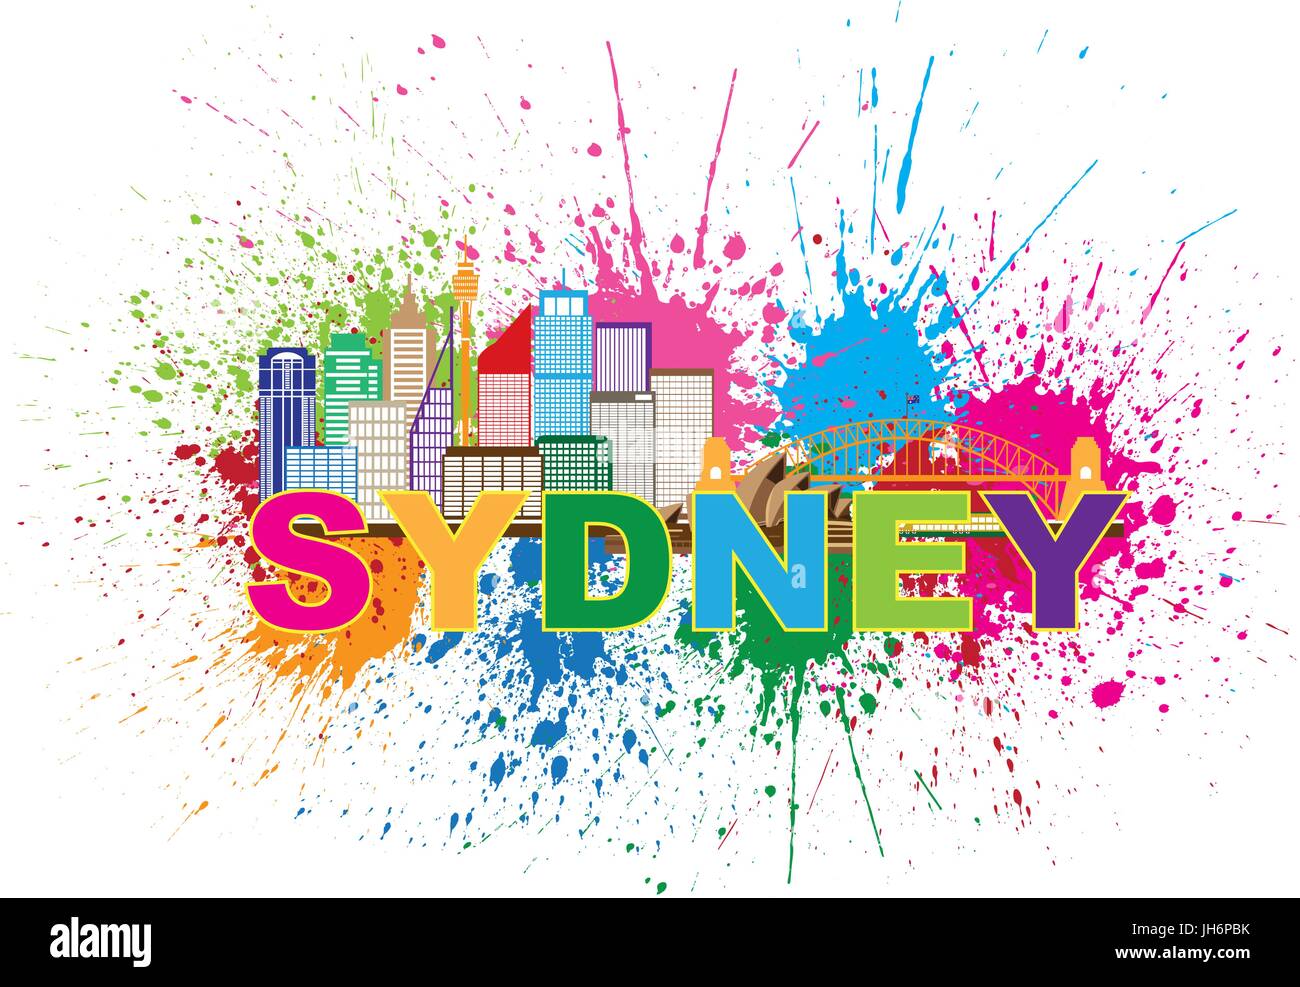 Hafenbrücke Australien Skyline Wahrzeichen Farbspritzer bunt abstrakt isoliert auf weißem Hintergrund Illustration Stock Vektor